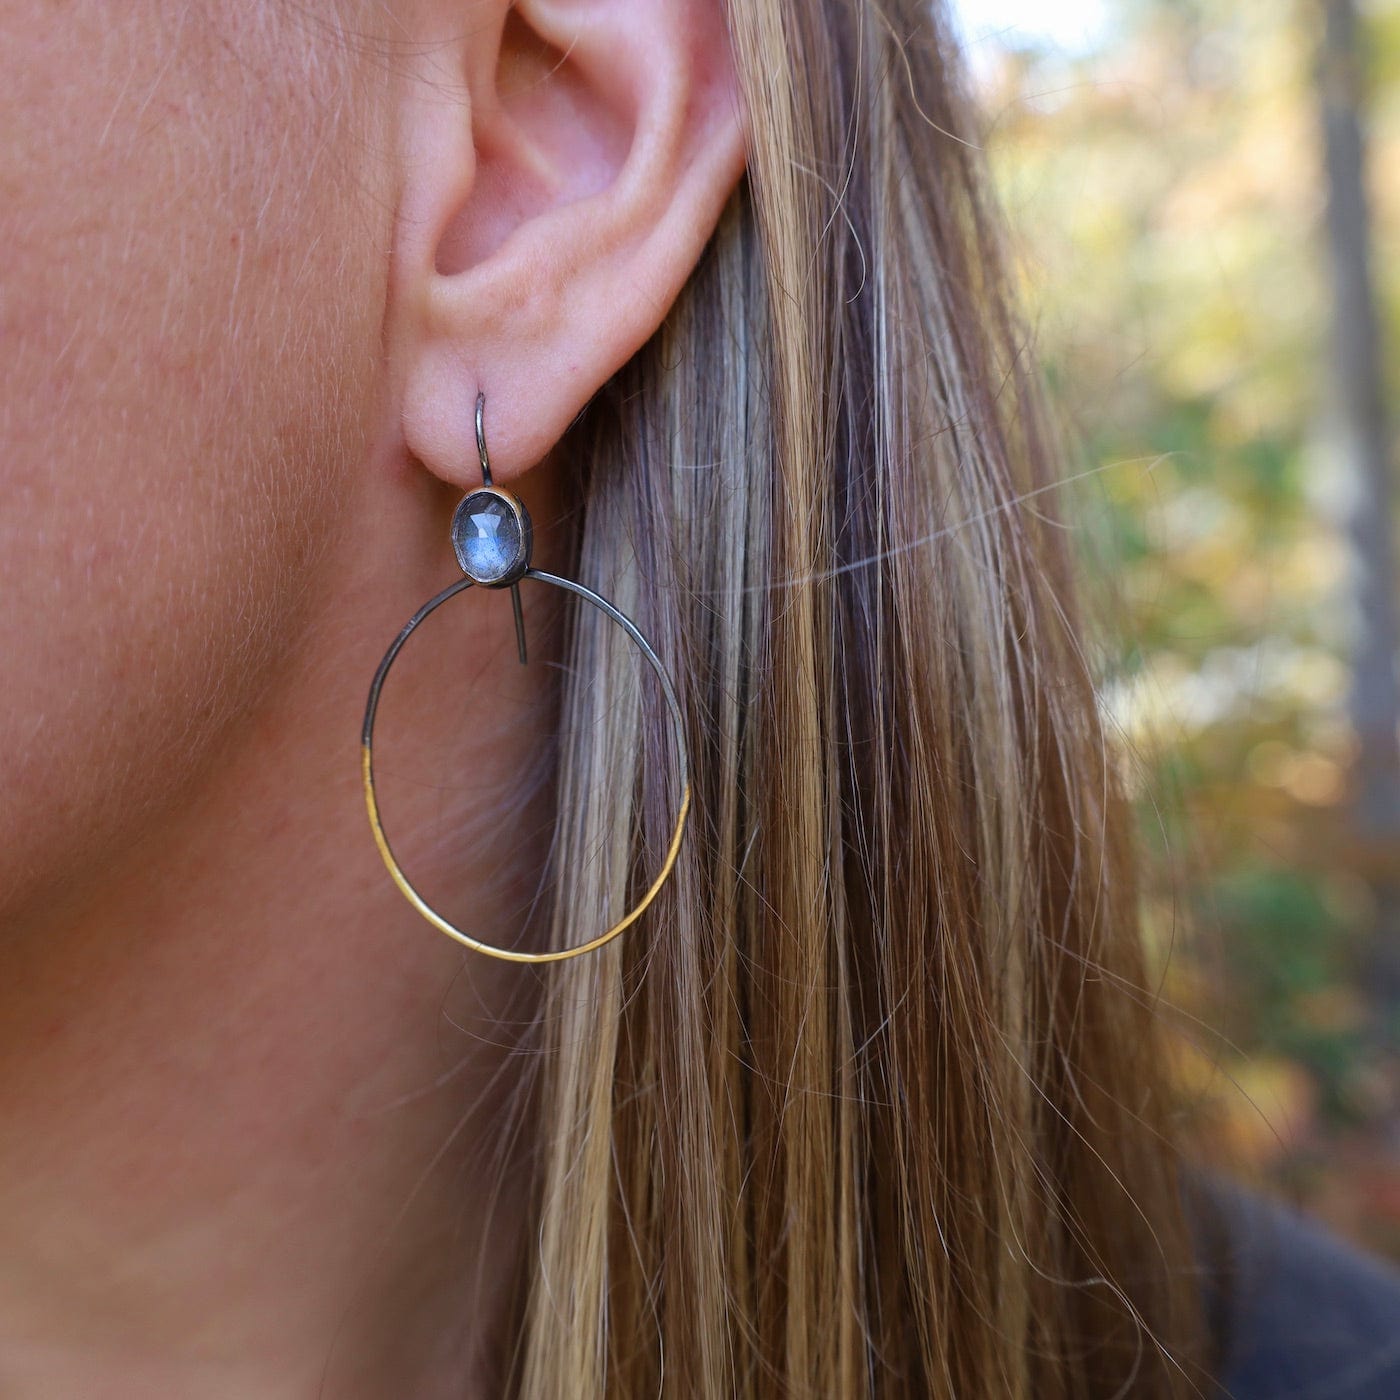 EAR Rim Hoop Earrings with Labradorite